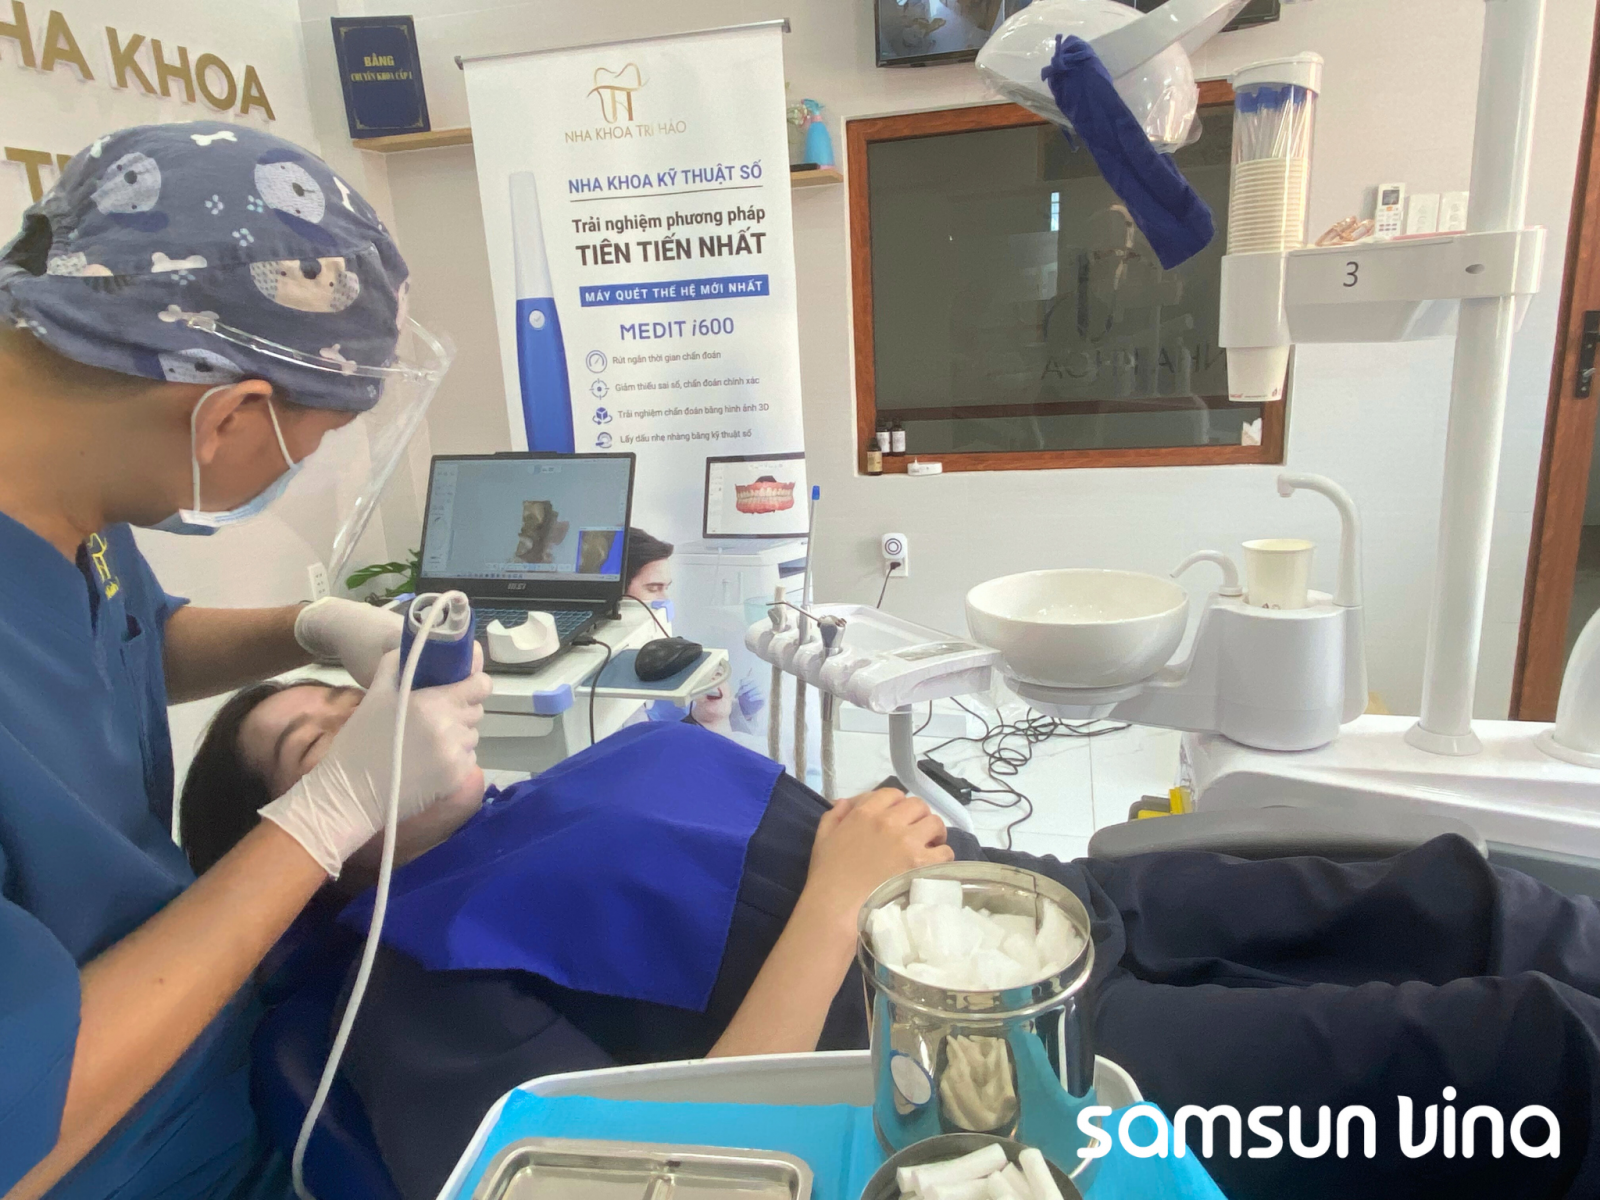 Samsun Vina chuyển giao công nghệ máy quét trong miệng kỹ thuật số Medit i600 cho nha khoa Trí Hảo 